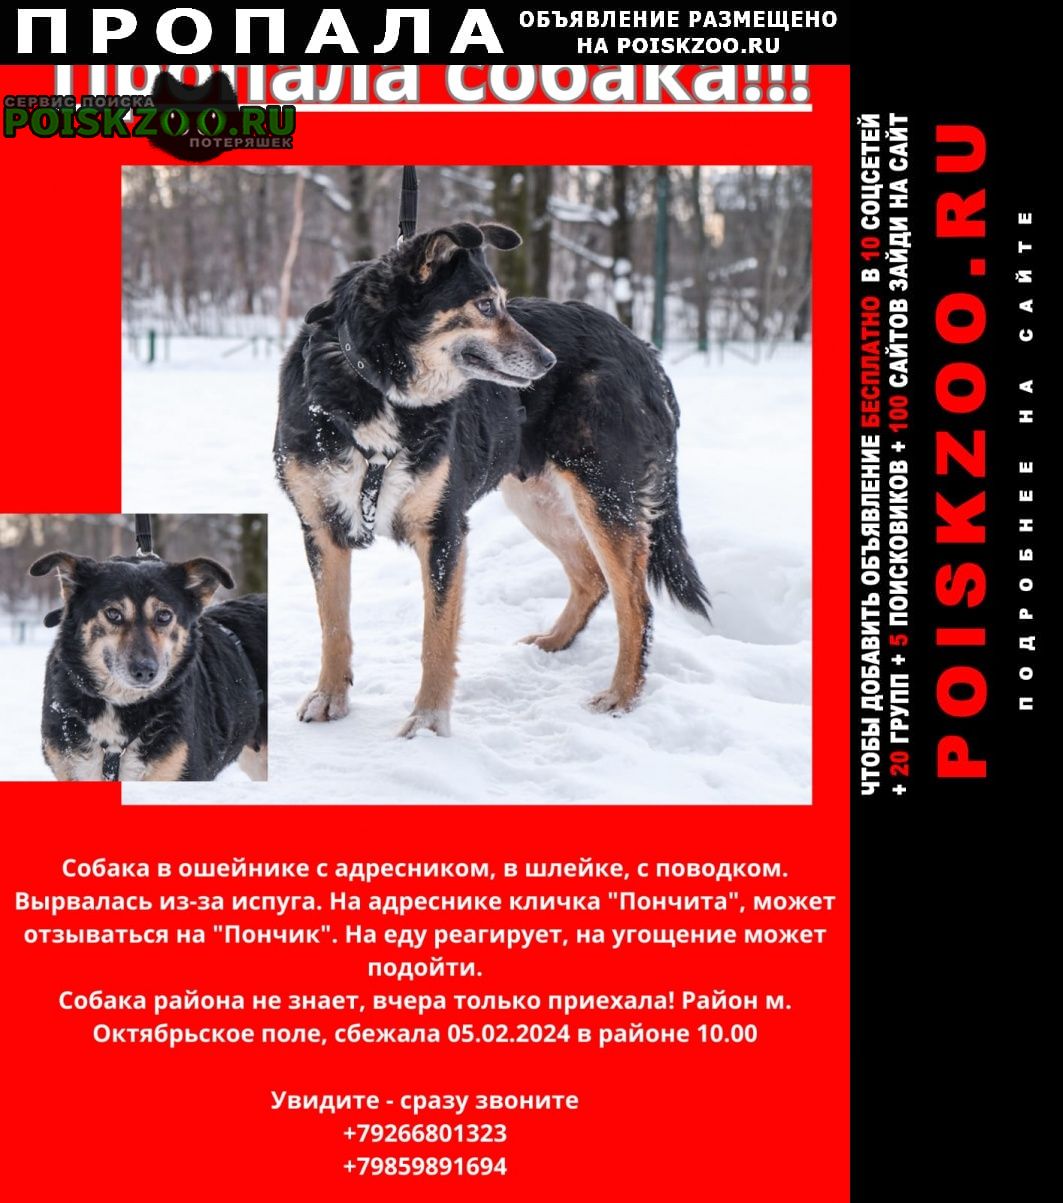 Пропала собака 5 февраля потерялась с поводком Москва